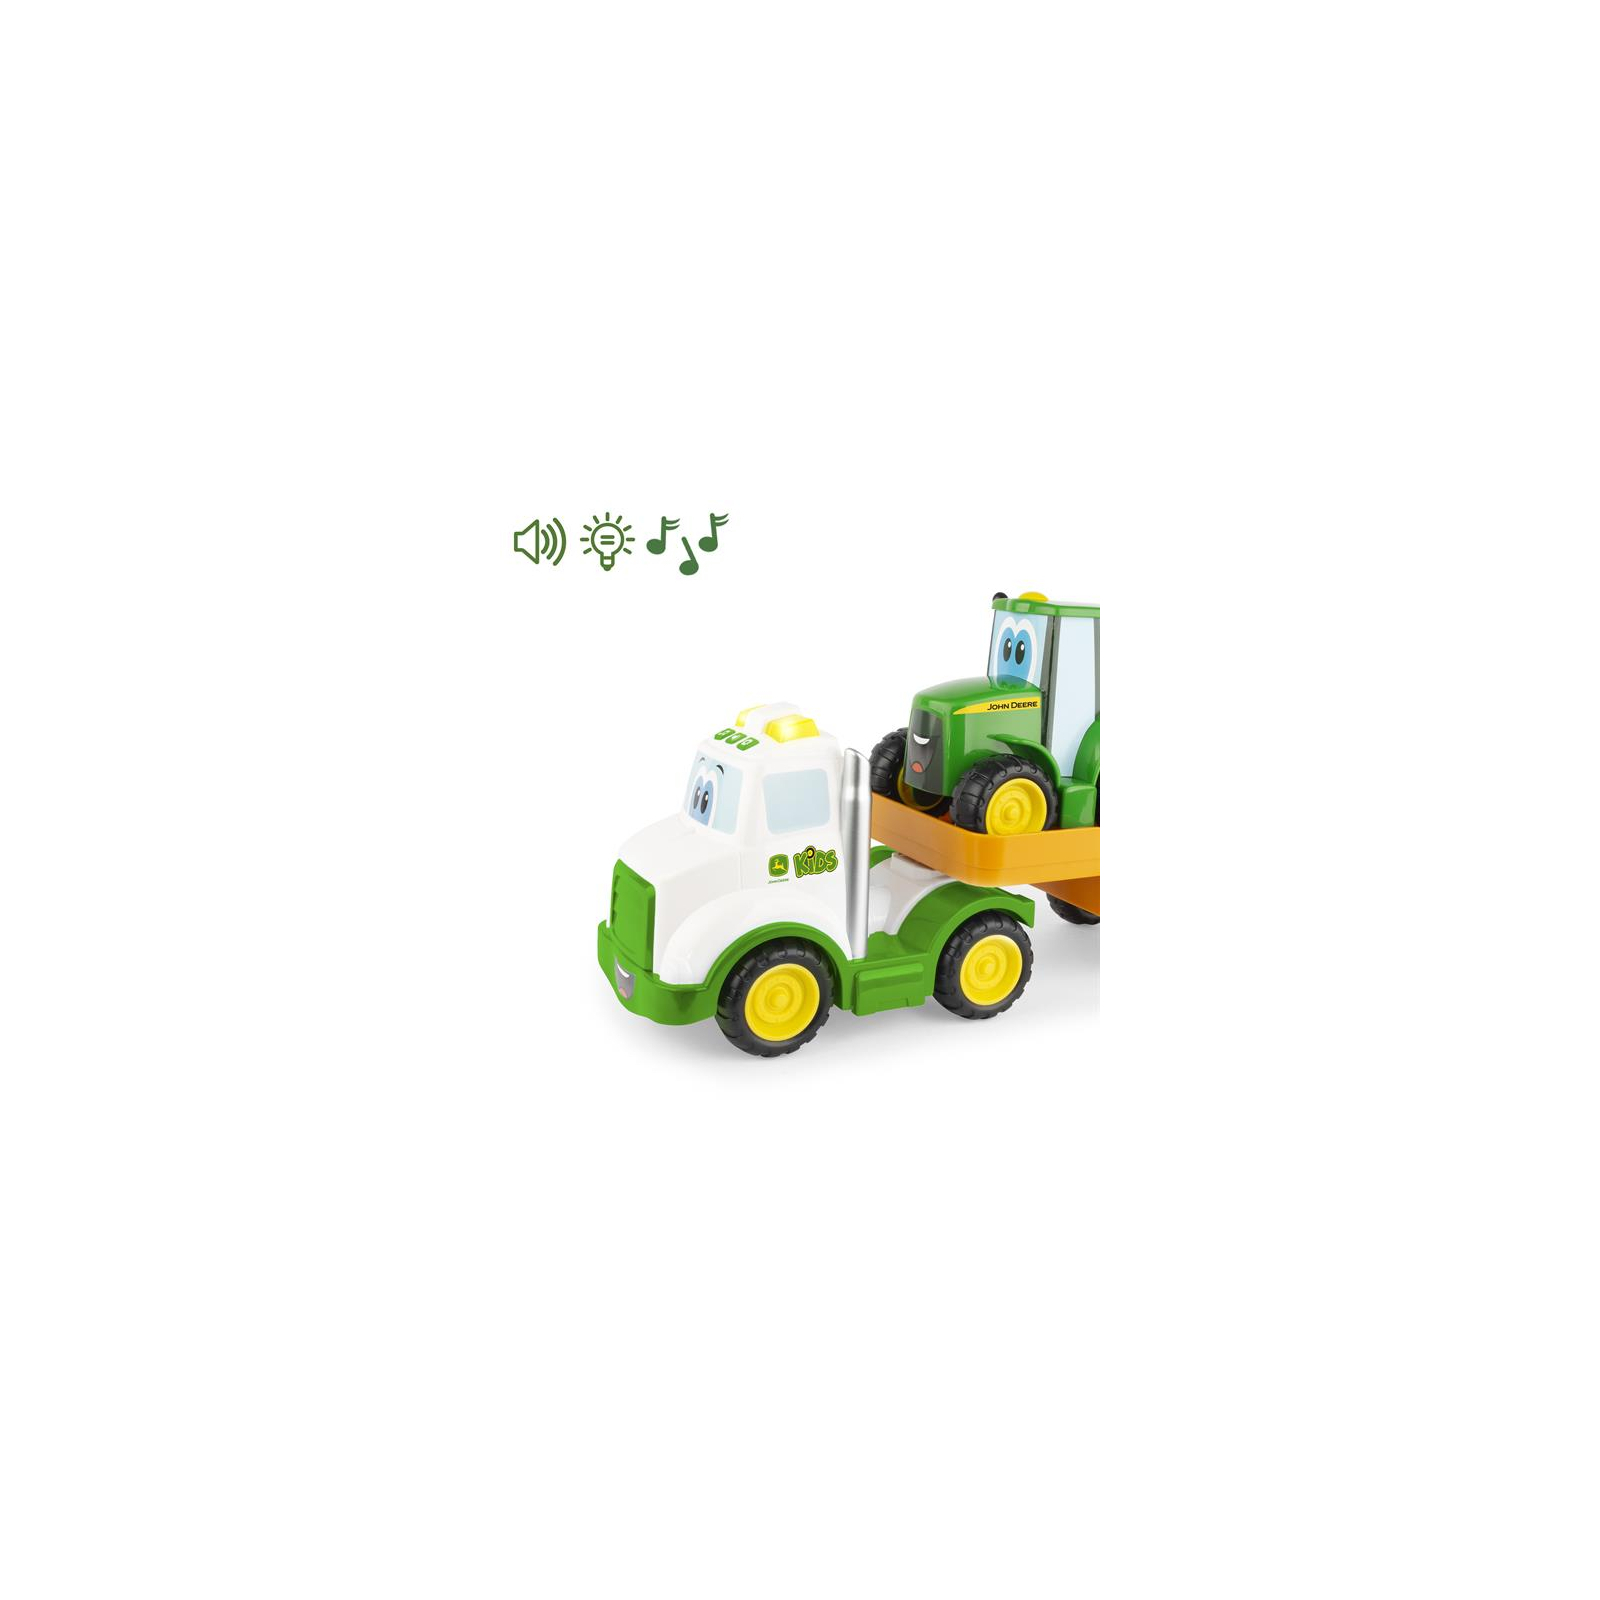 Спецтехника John Deere Kids тягач и трактор со светом и звуком (47207) изображение 2